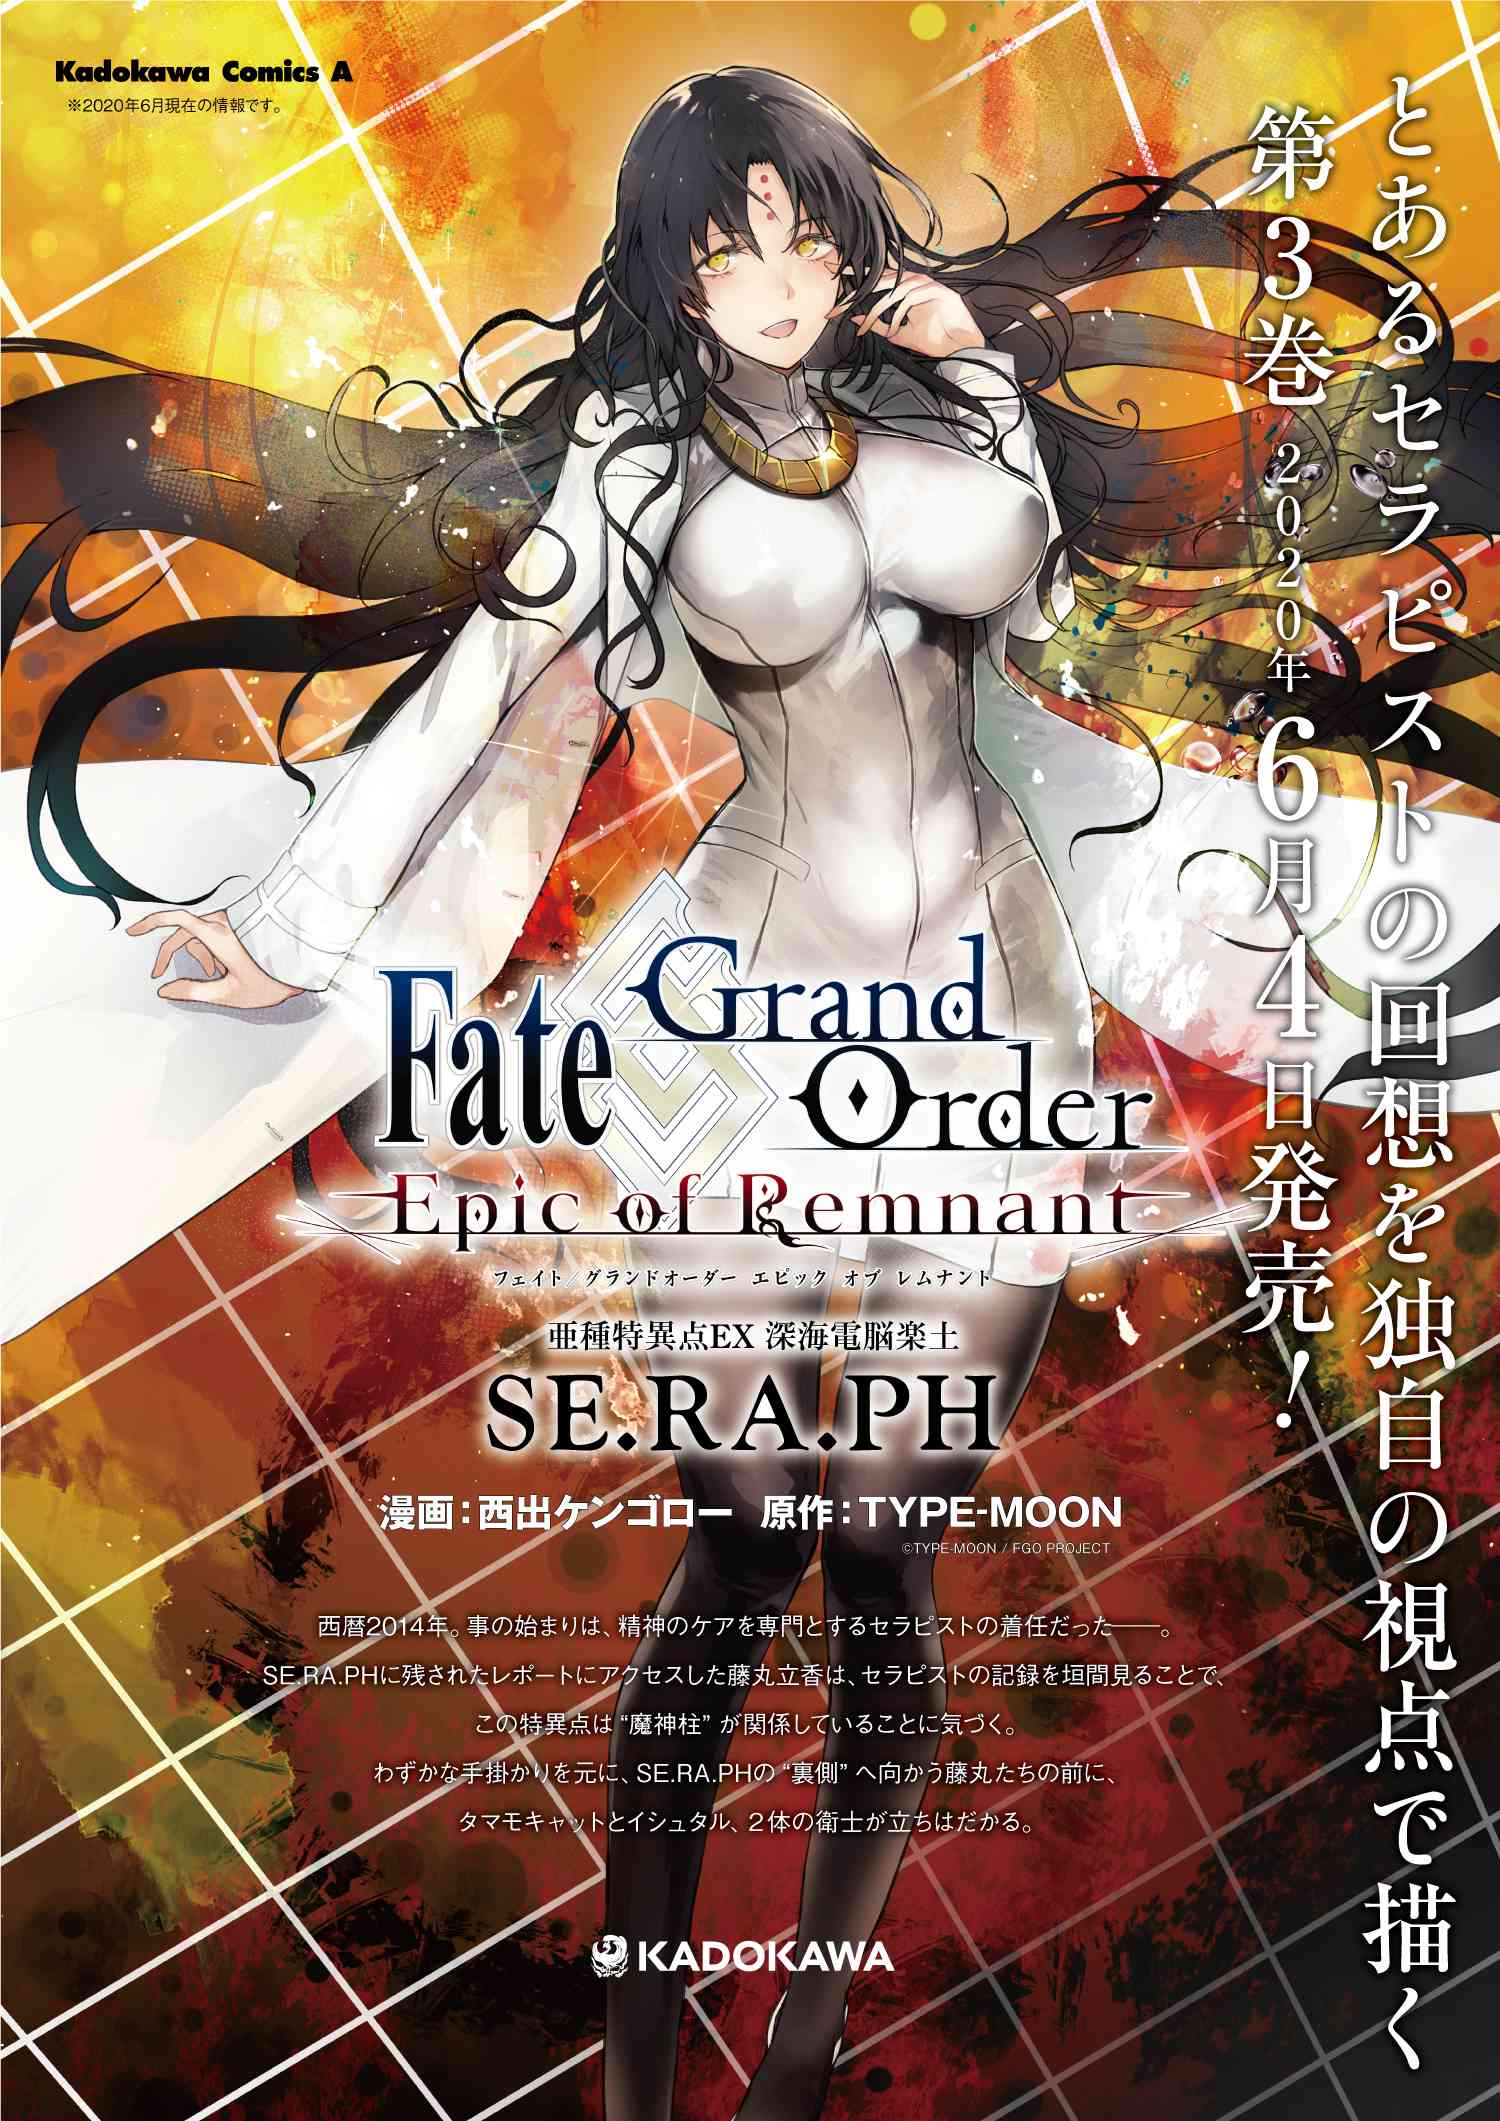 Fate Grand Order Epic Of Remnant 亜種特異点ex 深海電脳楽土 Se Ra Ph 第14話 1 ナッツ クラッカーをもう一度 Type Moonコミックエース 無料で漫画が読めるオンラインマガジン